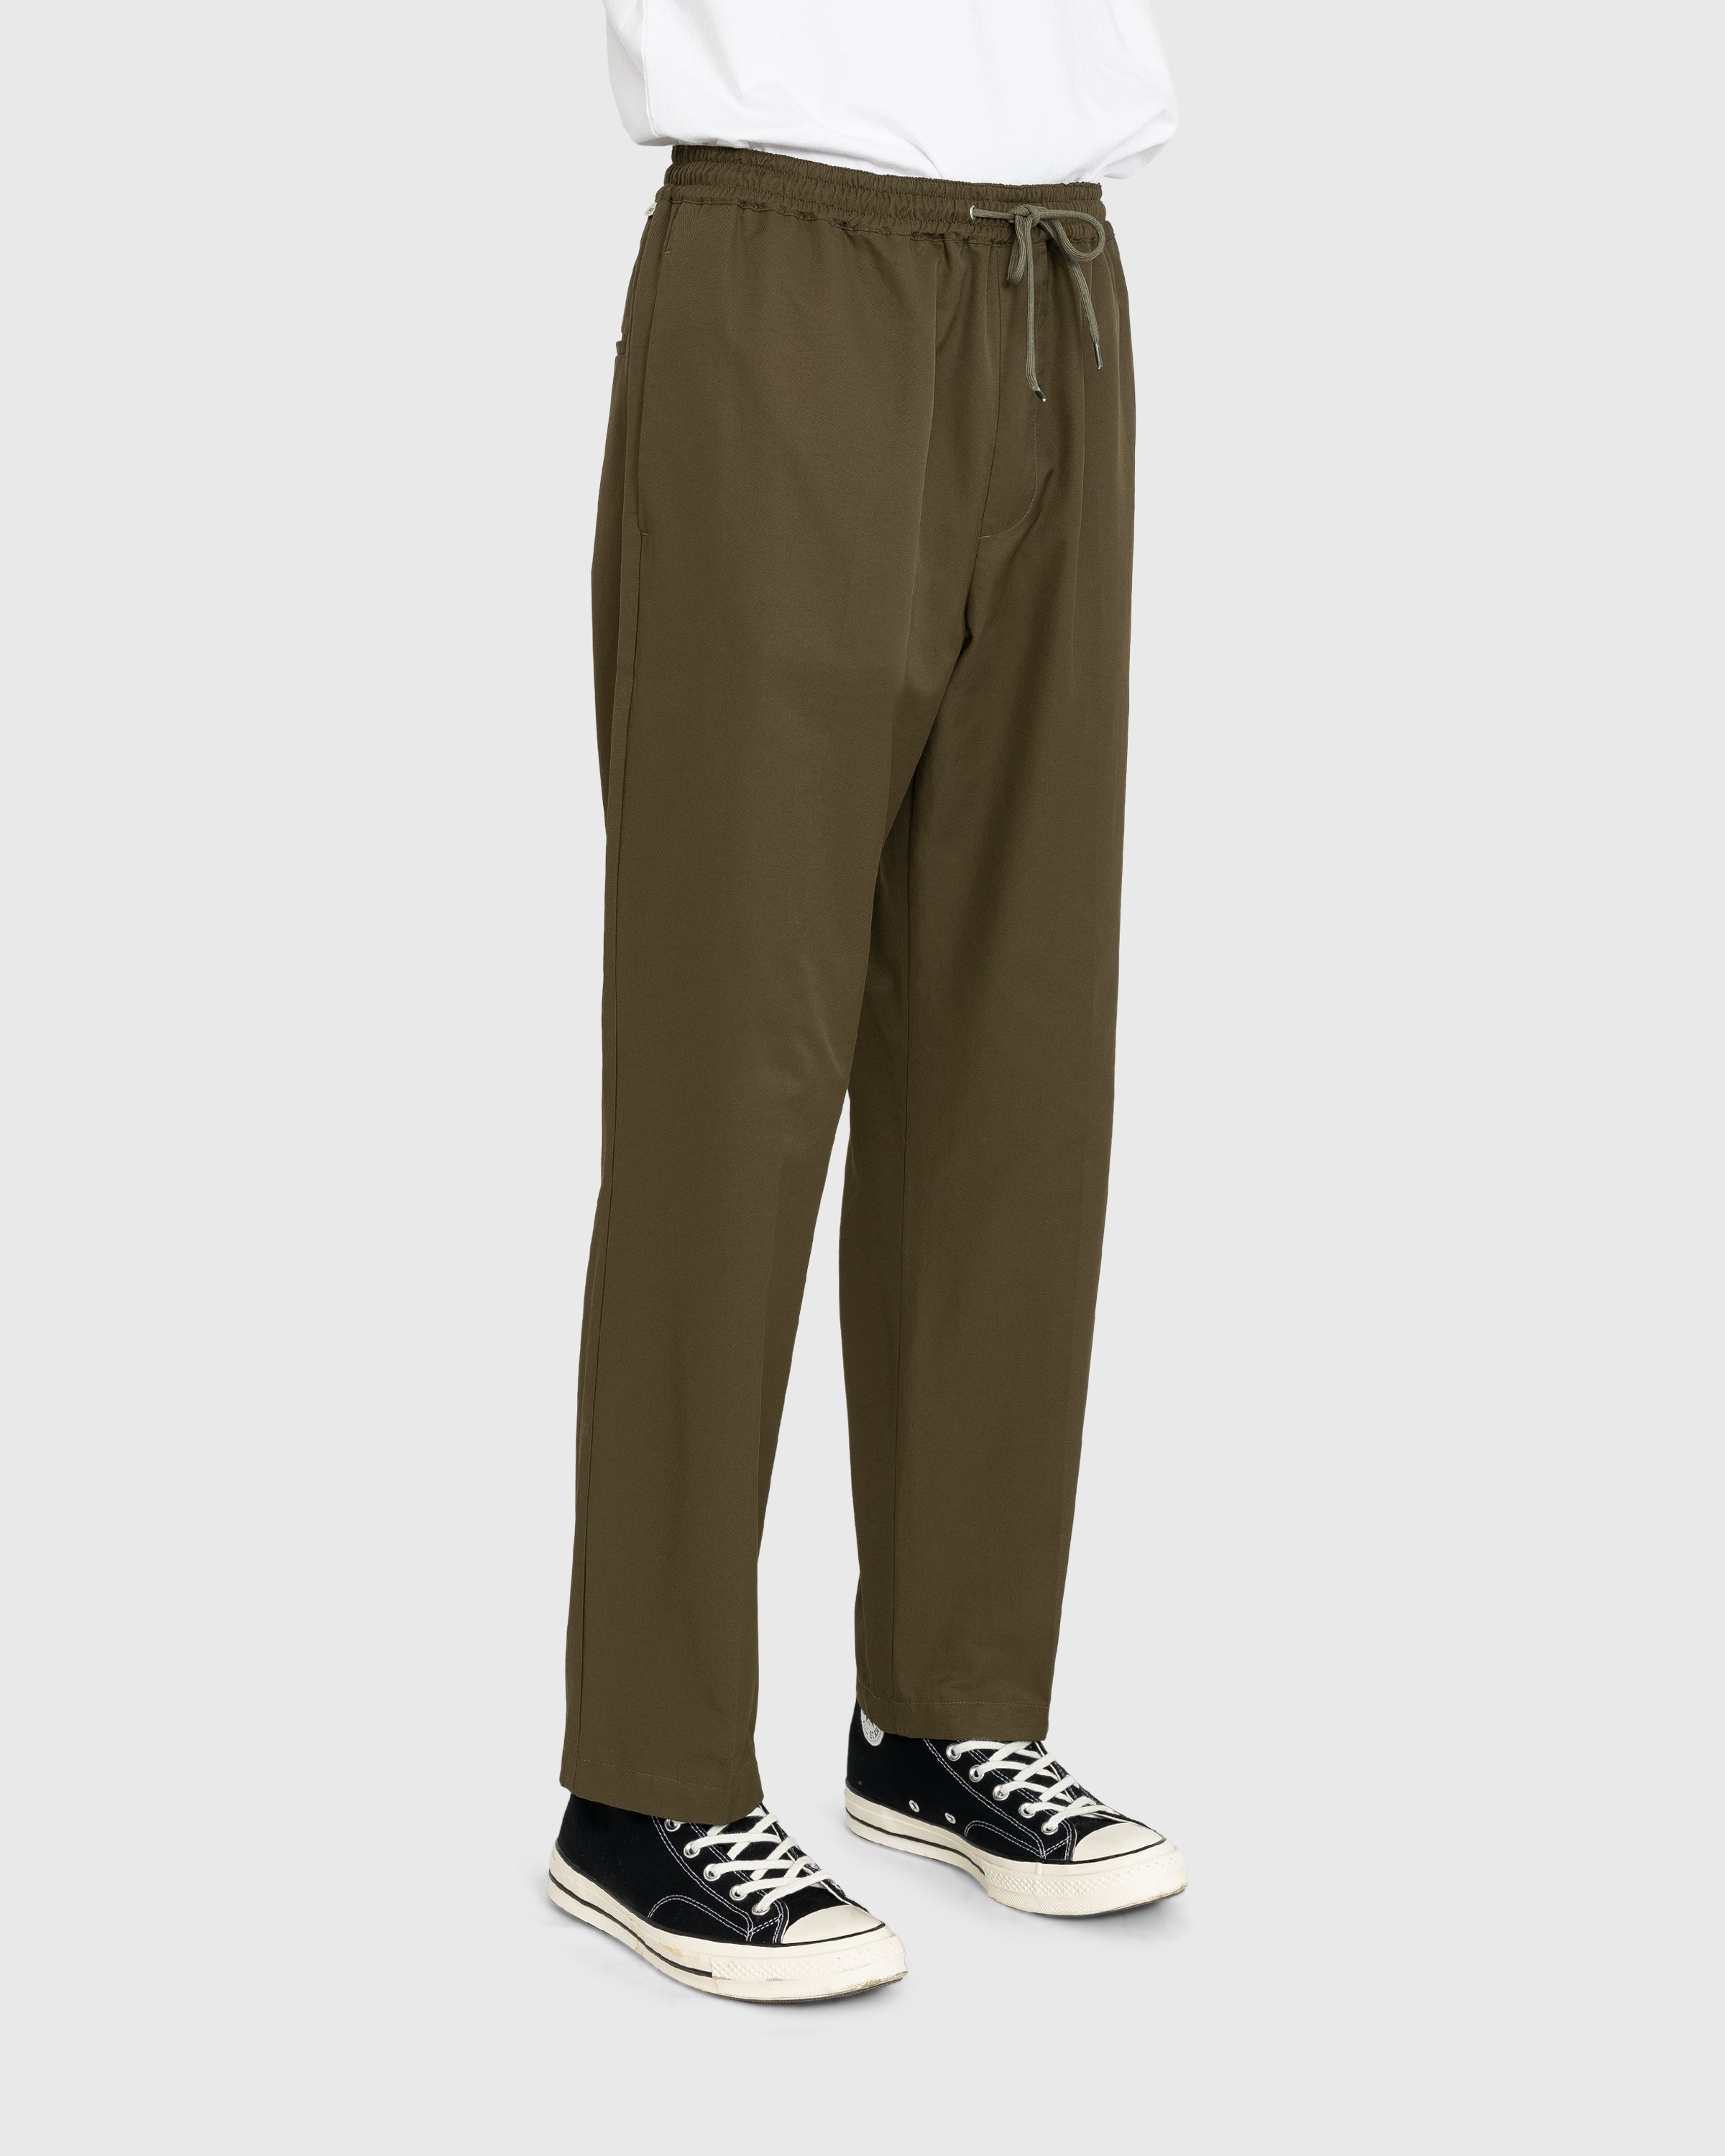 Highsnobiety - Cotton Nylon Elastic Pants Olive - Clothing - Green - Image 2